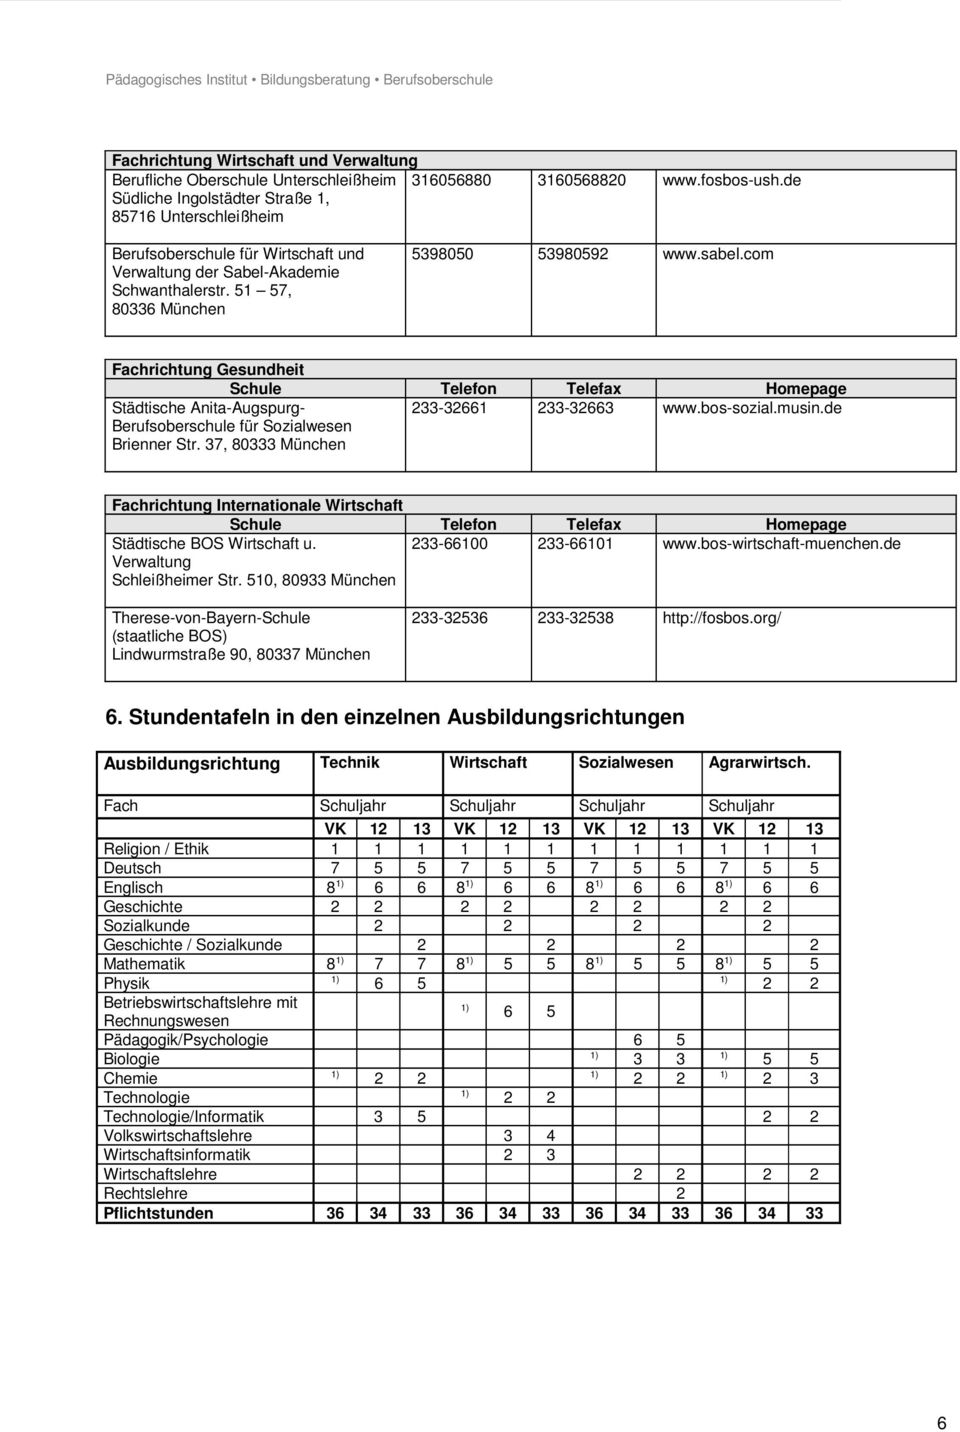 com Fachrichtung Gesundheit Städtische Anita-Augspurg- Berufsoberschule für Sozialwesen Brienner Str. 37, 80333 München 233-32661 233-32663 www.bos-sozial.musin.